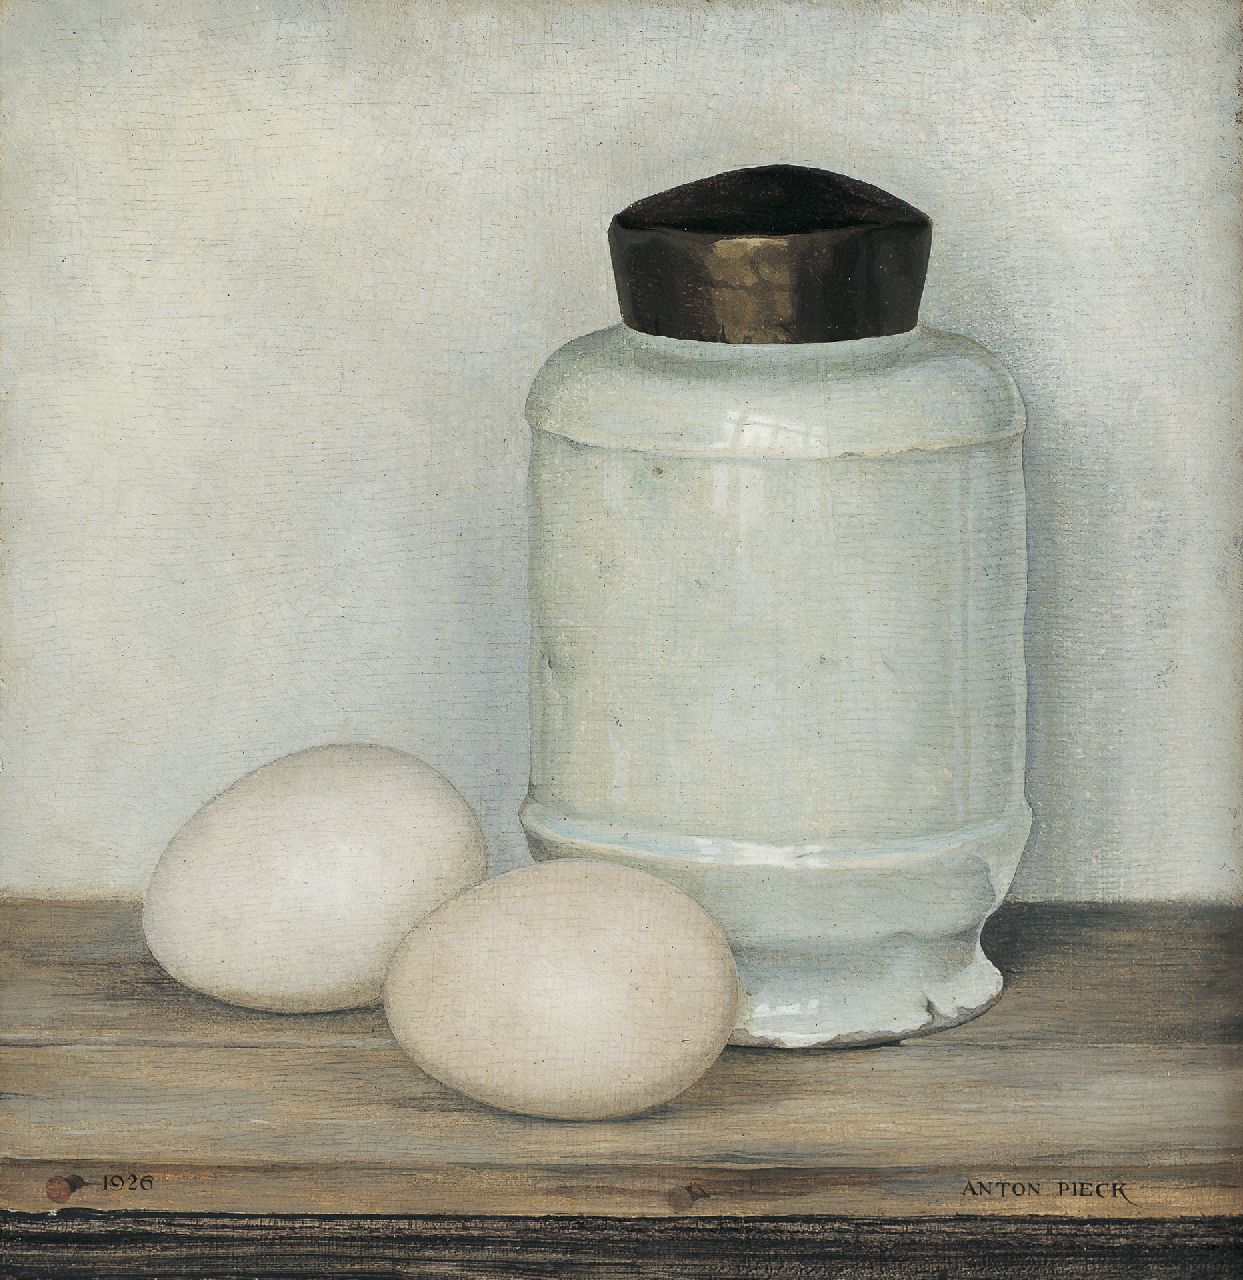 Pieck A.F.  | 'Anton' Franciscus Pieck, Wit potje met twee eieren, olieverf op paneel 20,5 x 20,0 cm, gesigneerd rechtsonder en gedateerd 1926